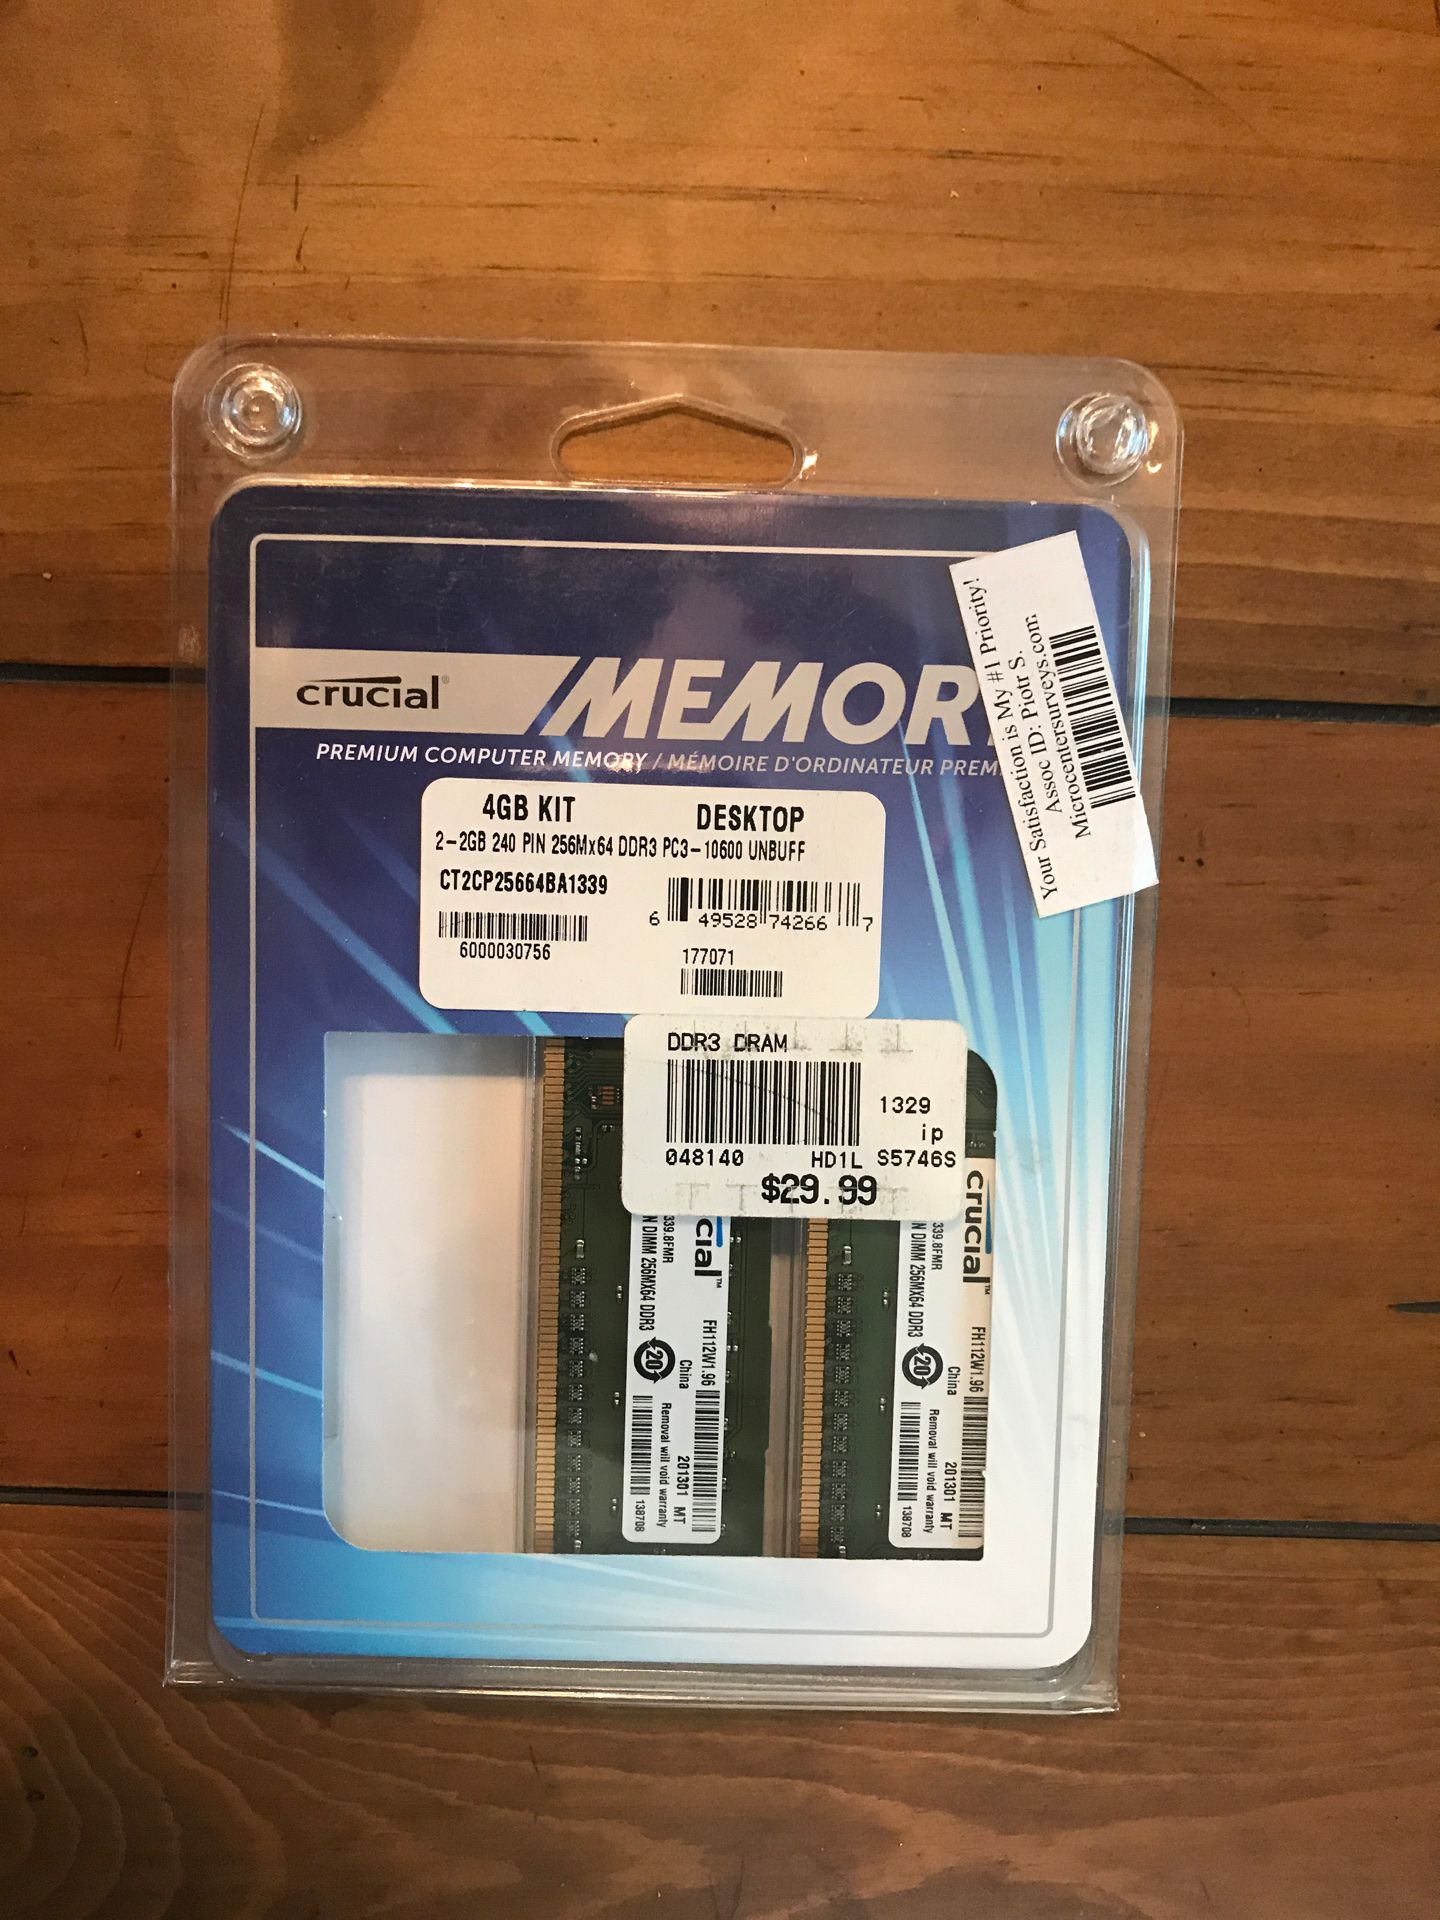 Crucial Memory Brand Premium Desktop Computer Memory